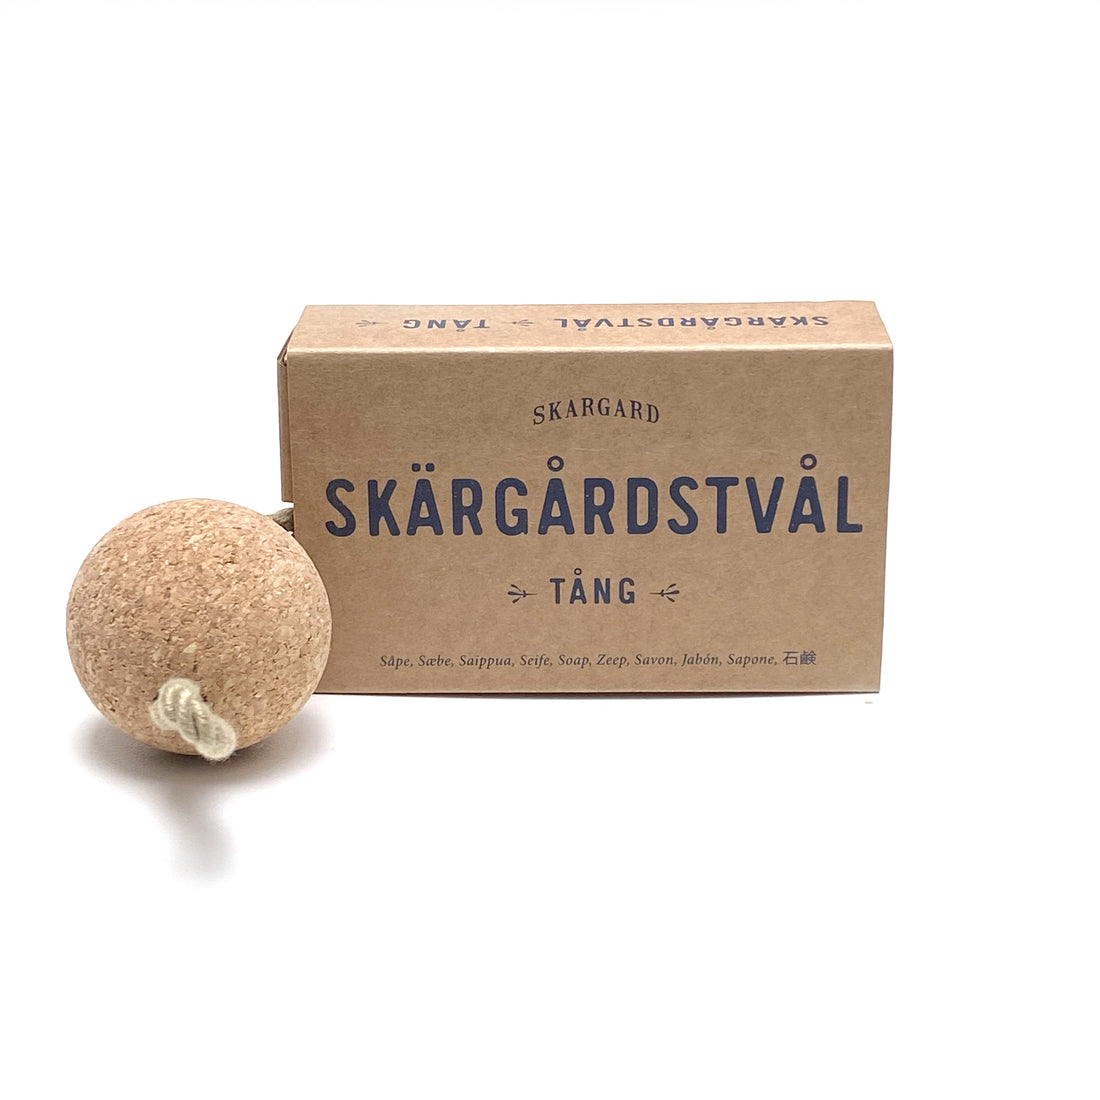 SWEDISH SKARGARD SOAP BAR WITH CORK